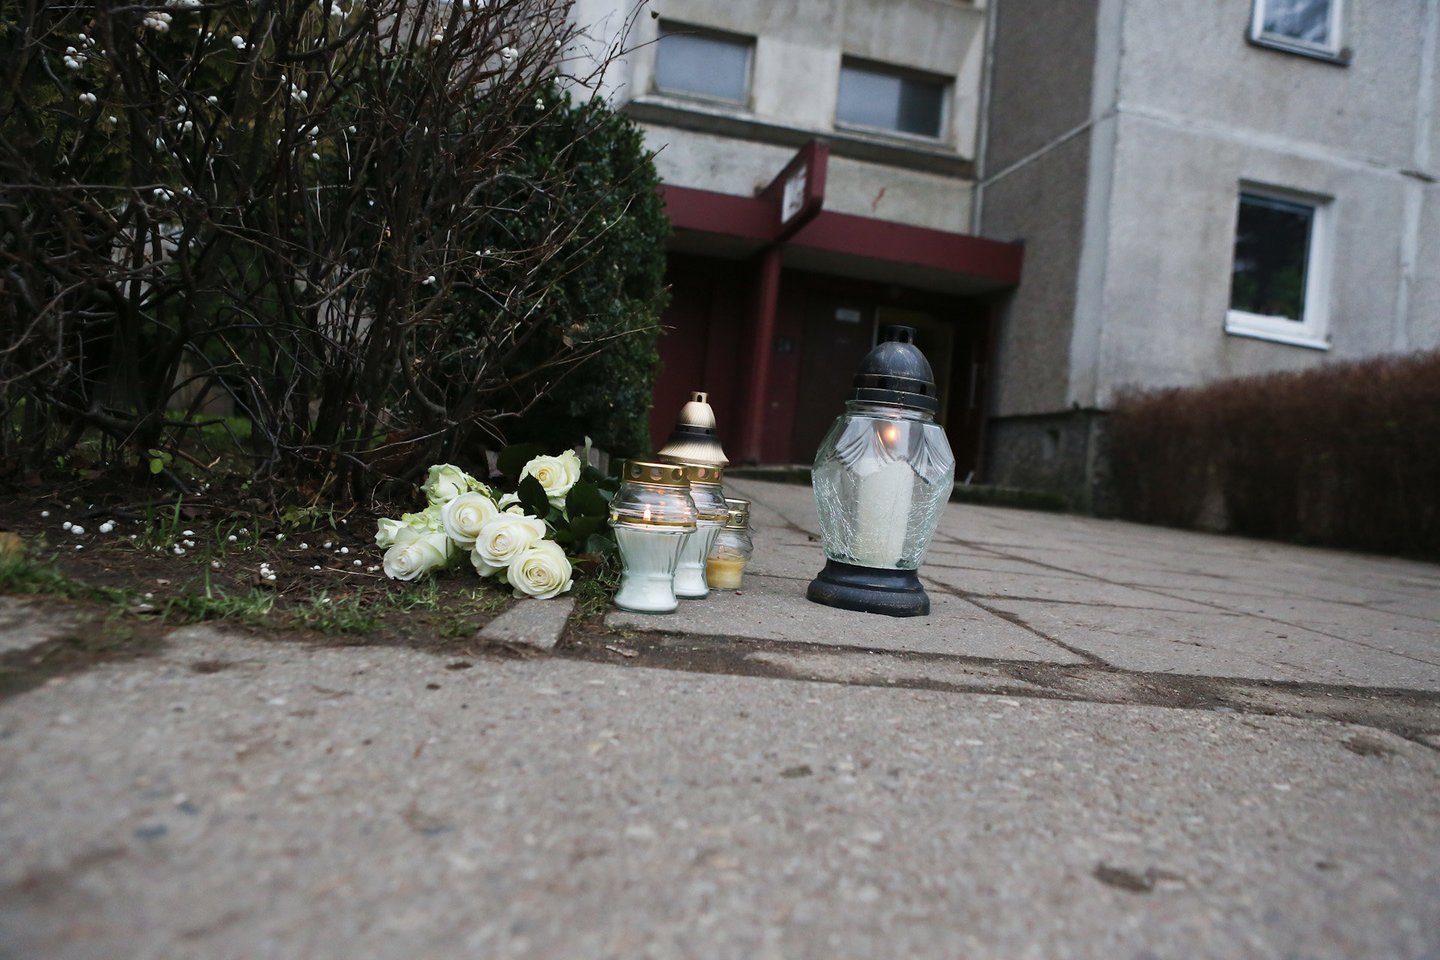  2016 metų gruodžio 21-osios vakarą prie savo namų Baltų prospekte Kaune buvo nužudytas žinomas bušido kovotojas Remigijus Morkevičius.<br> G.Bitvinsko archyvo nuotr.